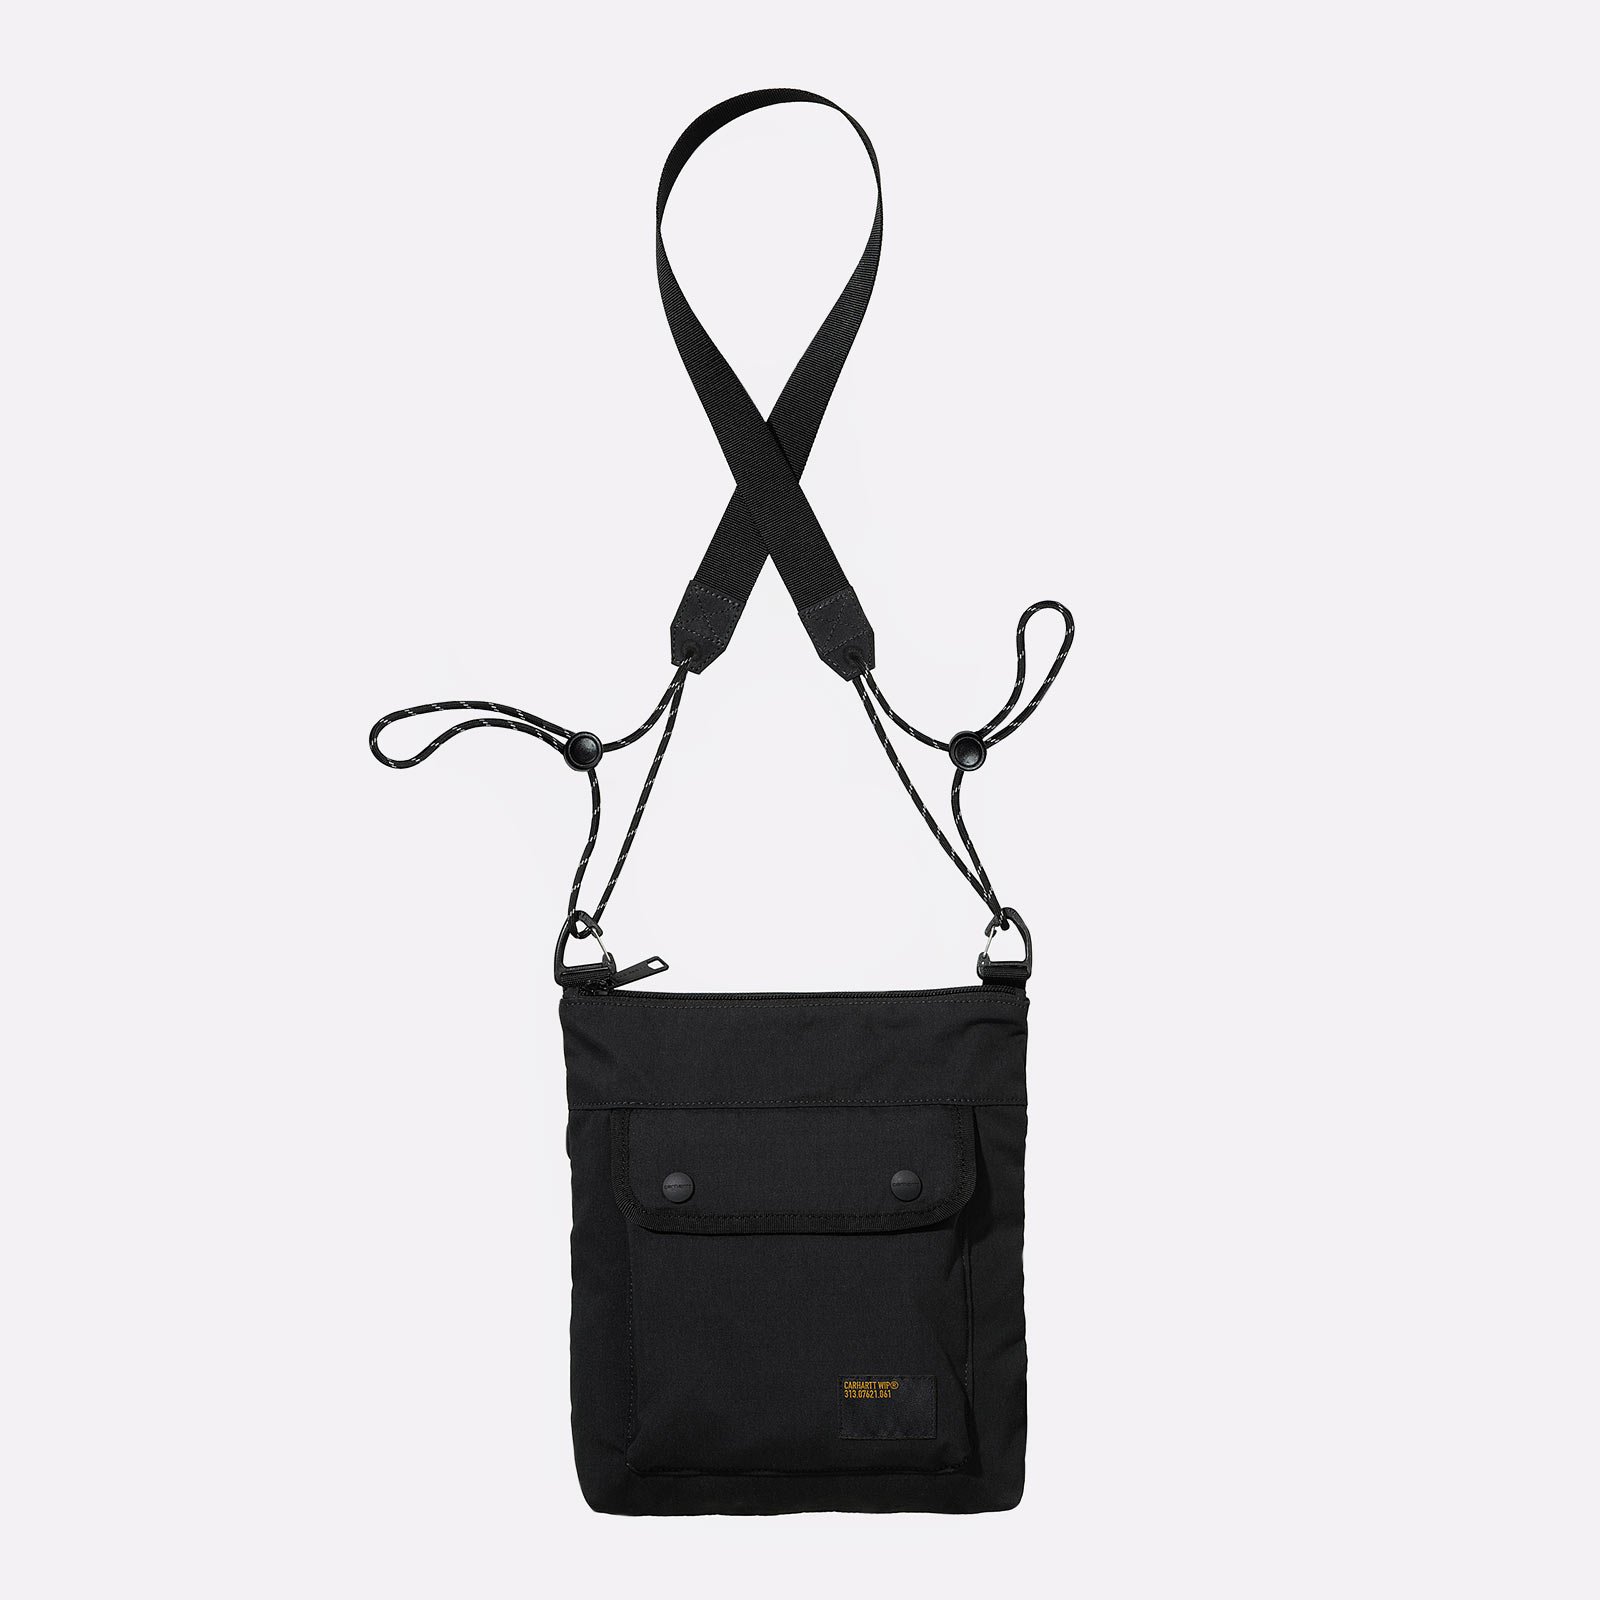 сумка Carhartt WIP Haste Strap Bag  (I032191-black)  - цена, описание, фото 1